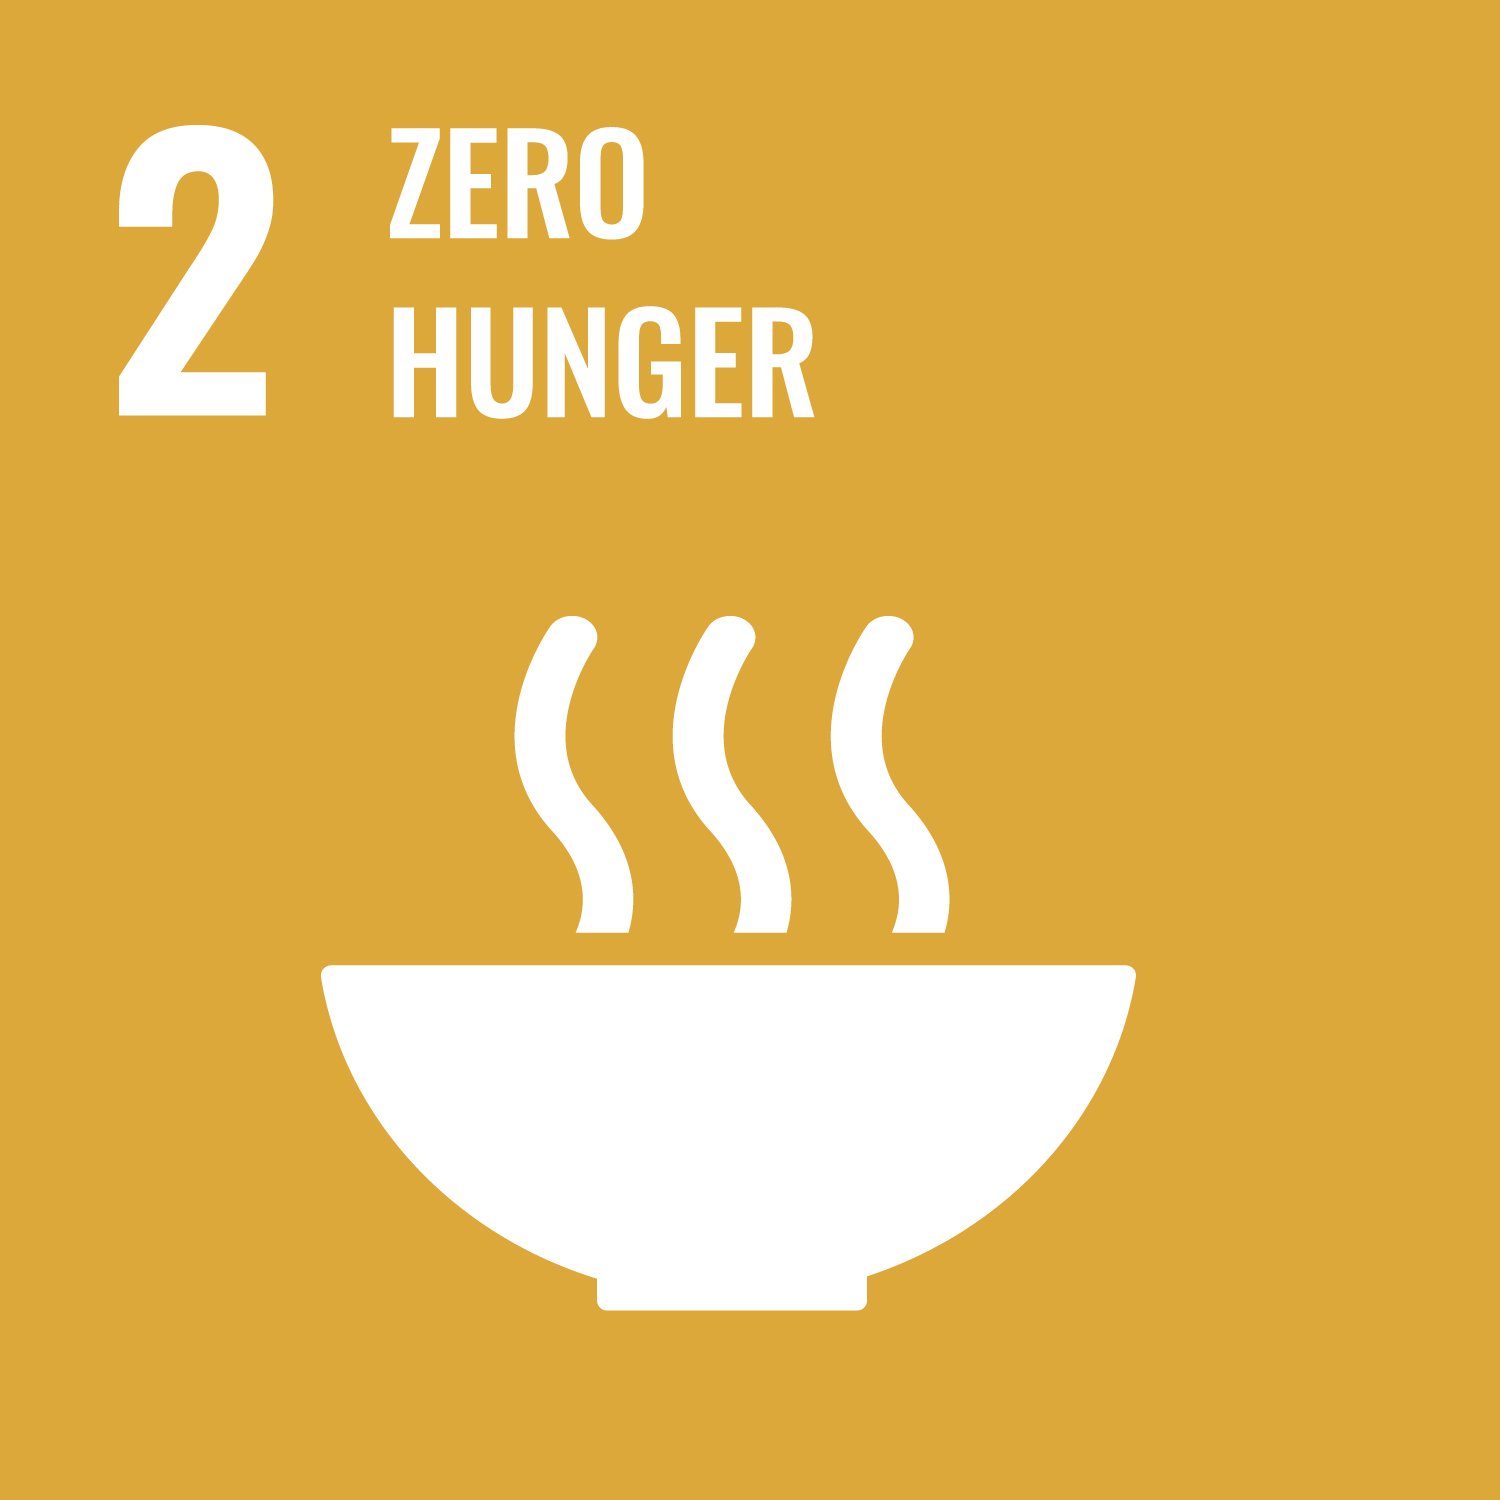 UN-Nachhaltigkeitsziel 2: Kein Hunger